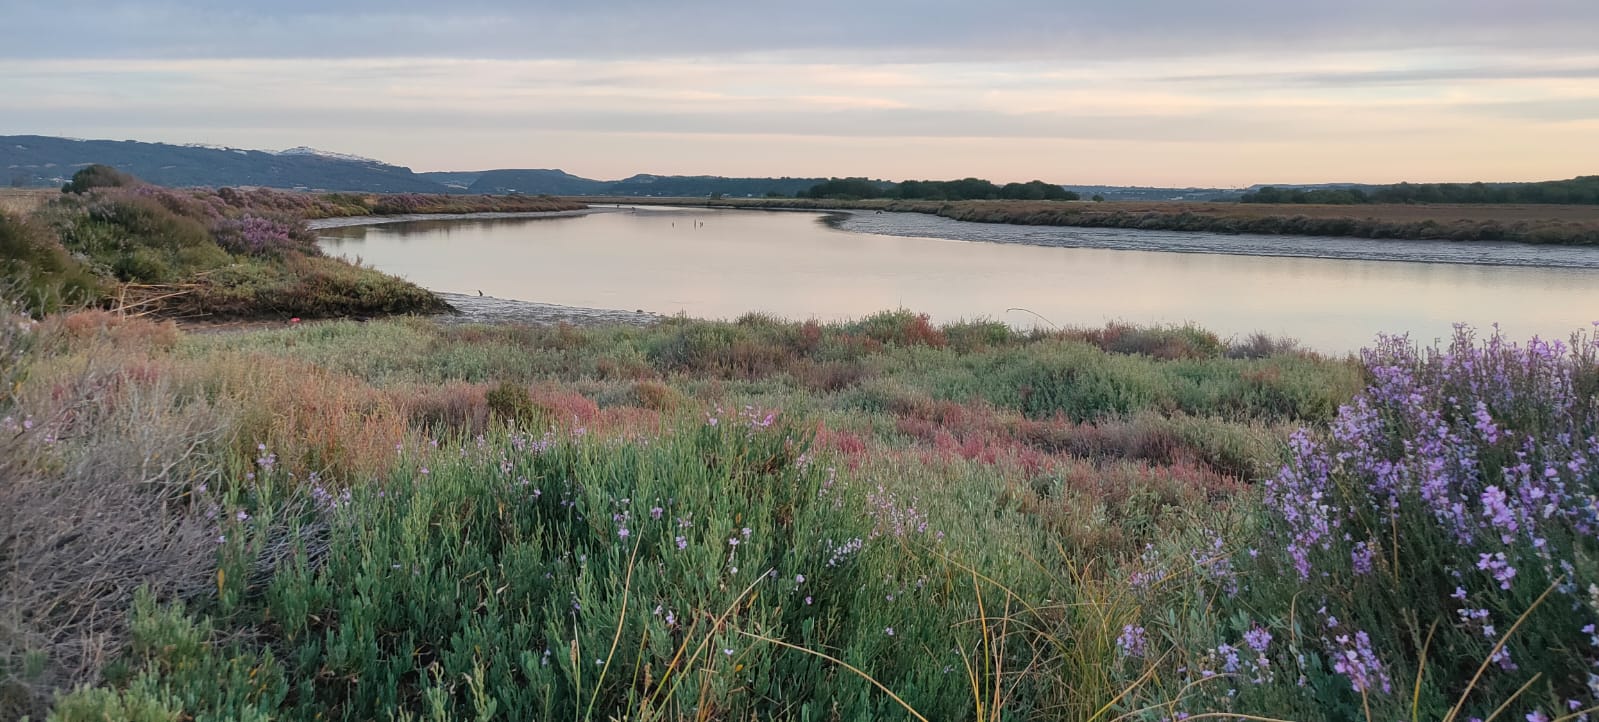 Negativa de la Junta de Andalucía para ampliar los límites de los parques naturales del litoral gaditano 